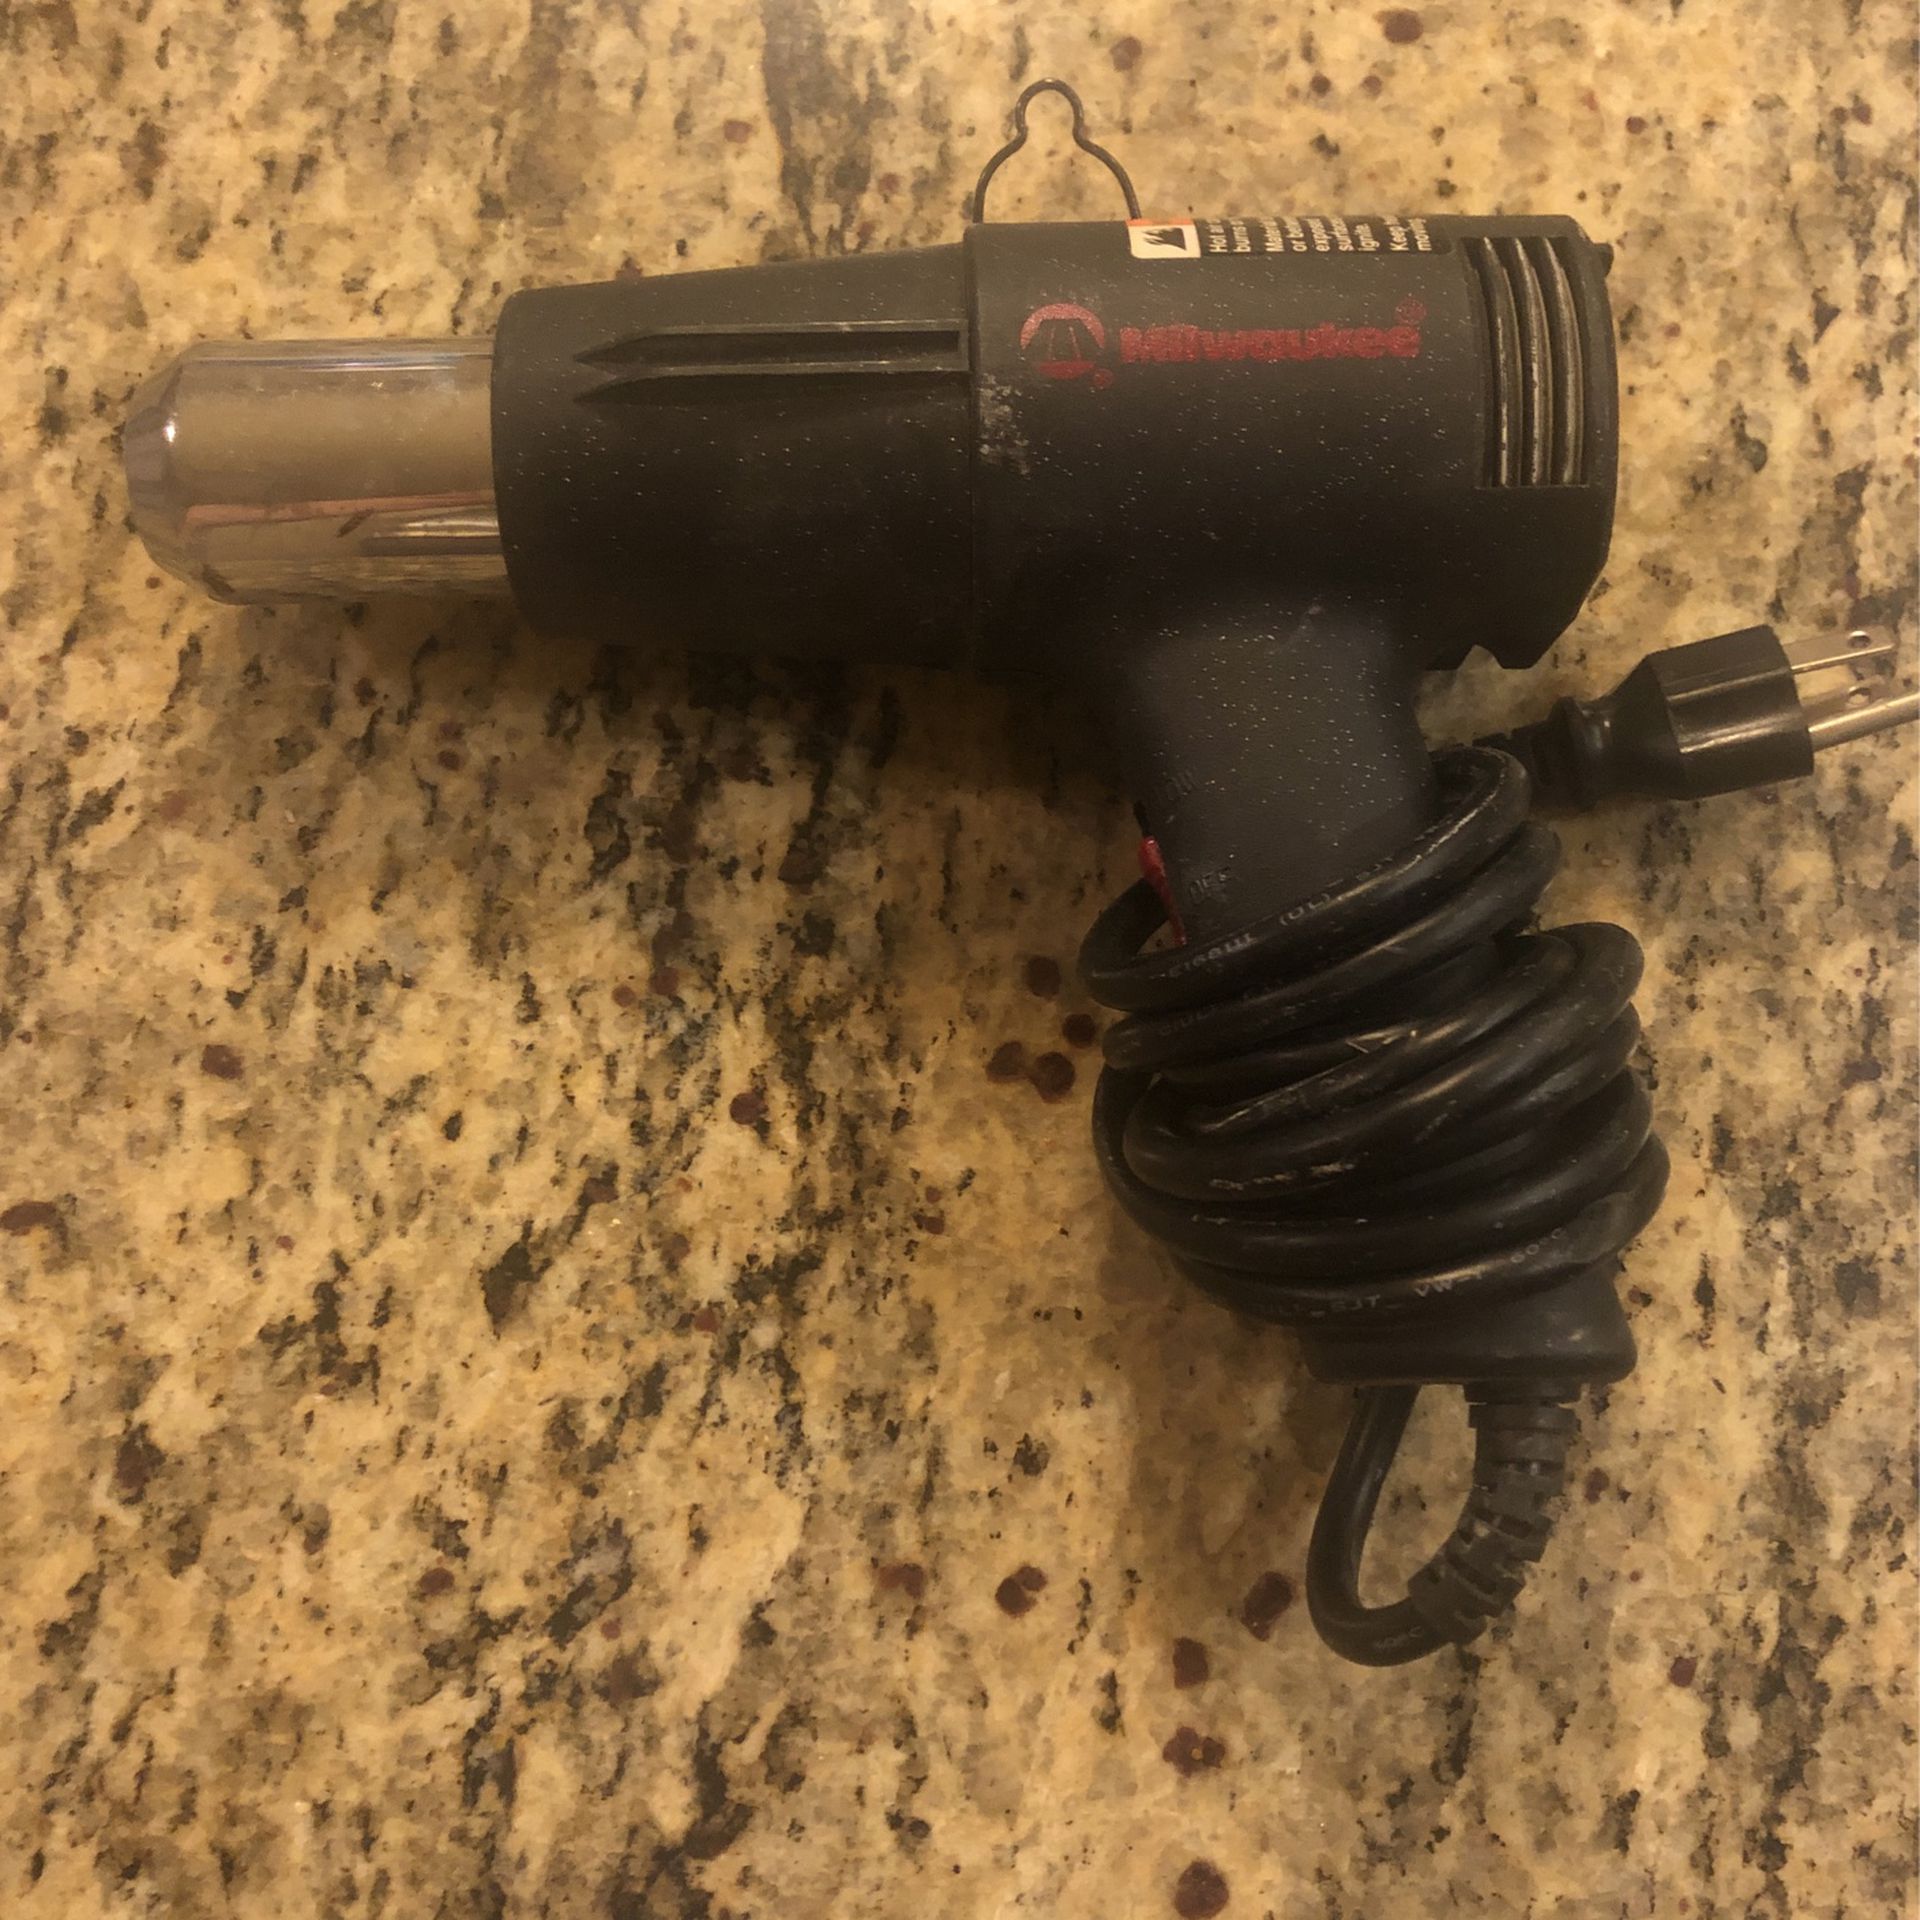 Used Milwaukee Heat Gun